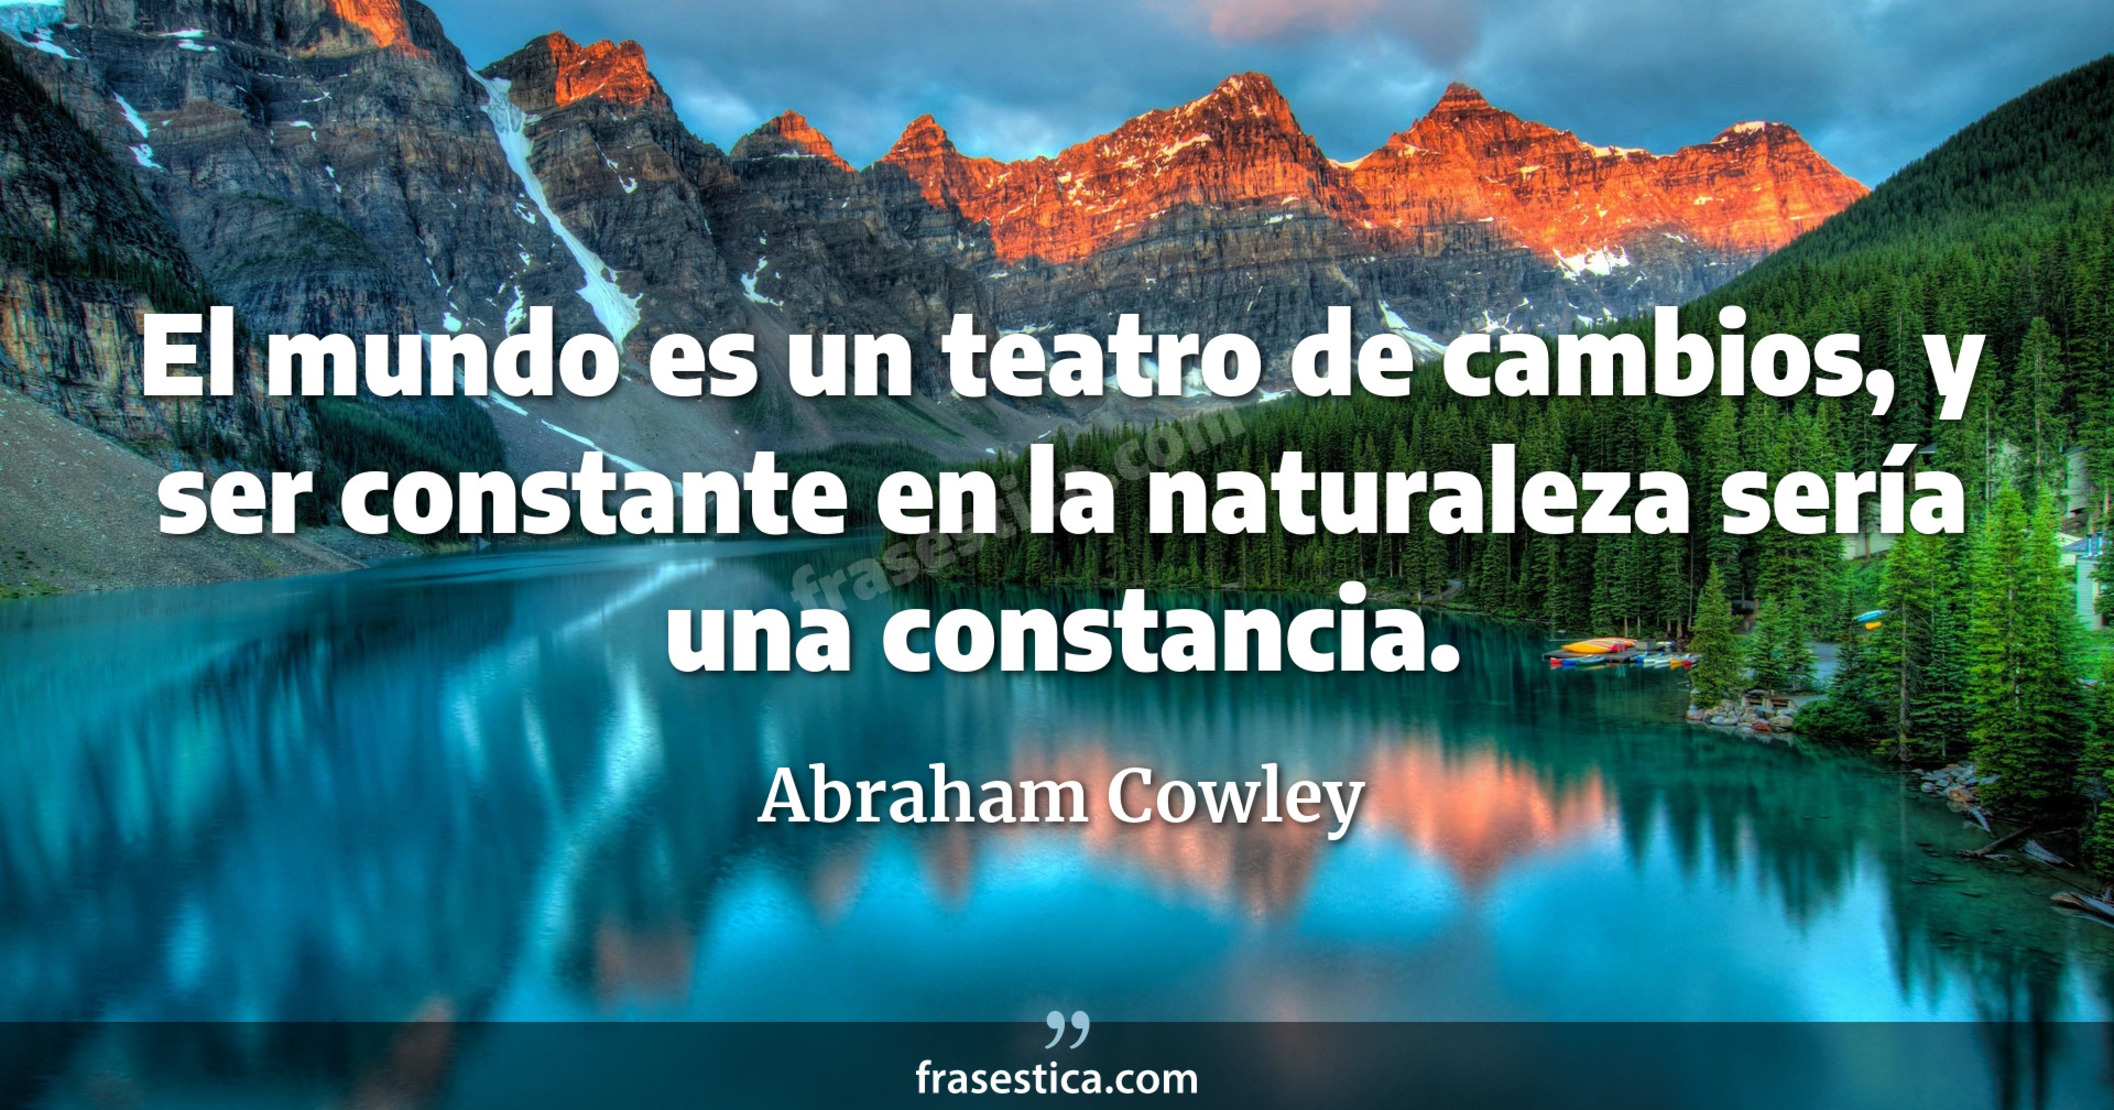 El mundo es un teatro de cambios, y ser constante en la naturaleza sería una constancia. - Abraham Cowley